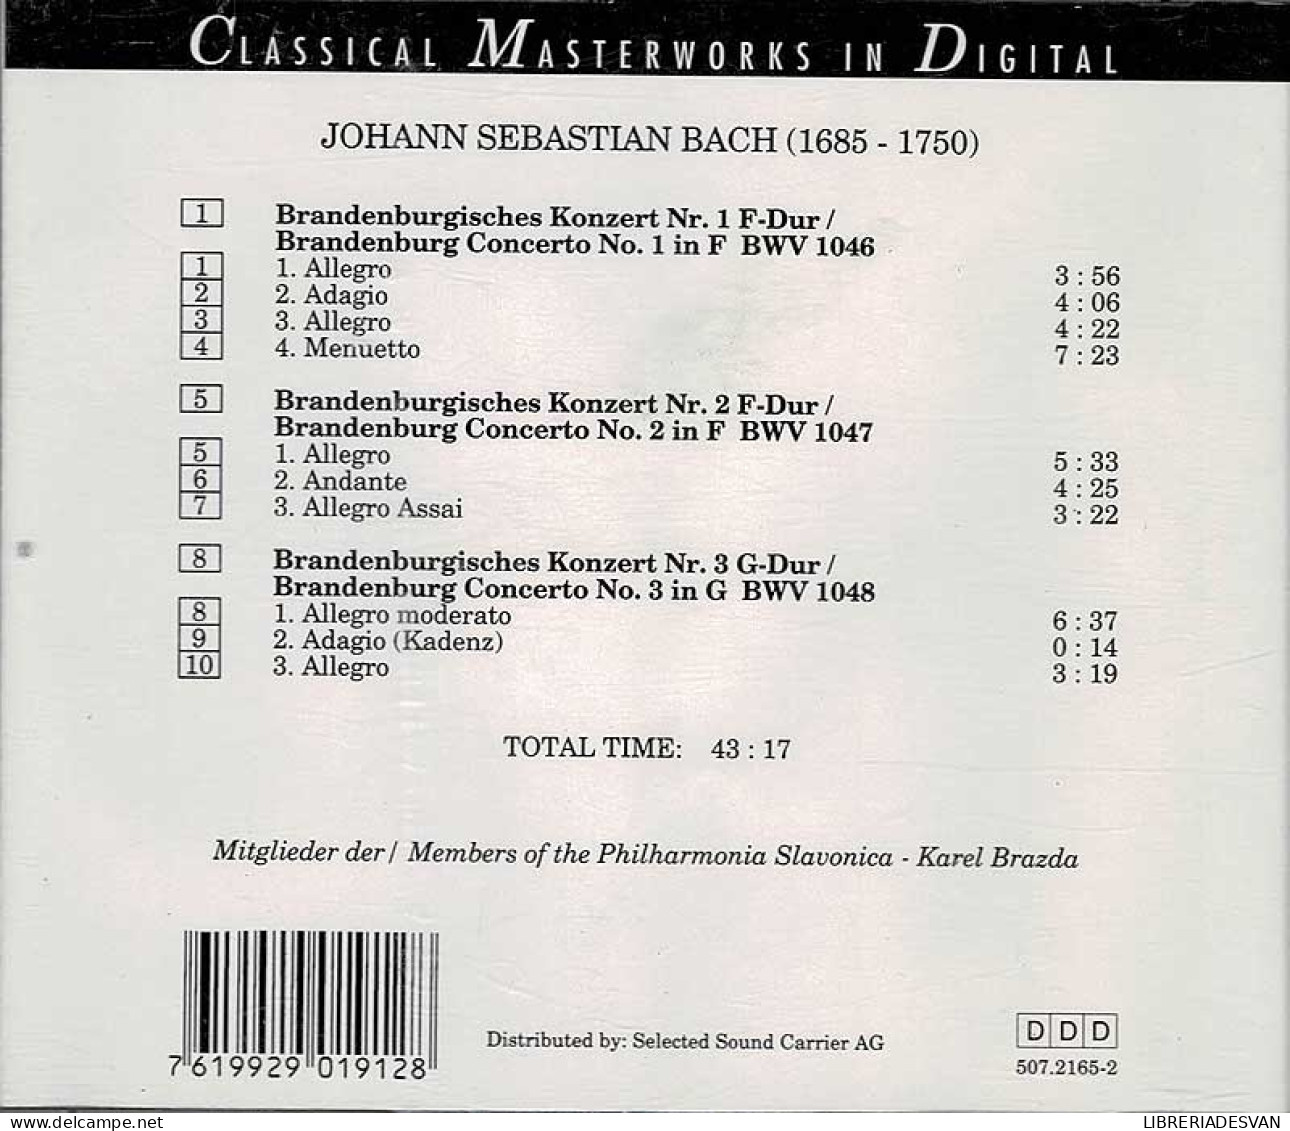 Johann Sebastian Bach - Brandenburg Concertos. CD - Klassik